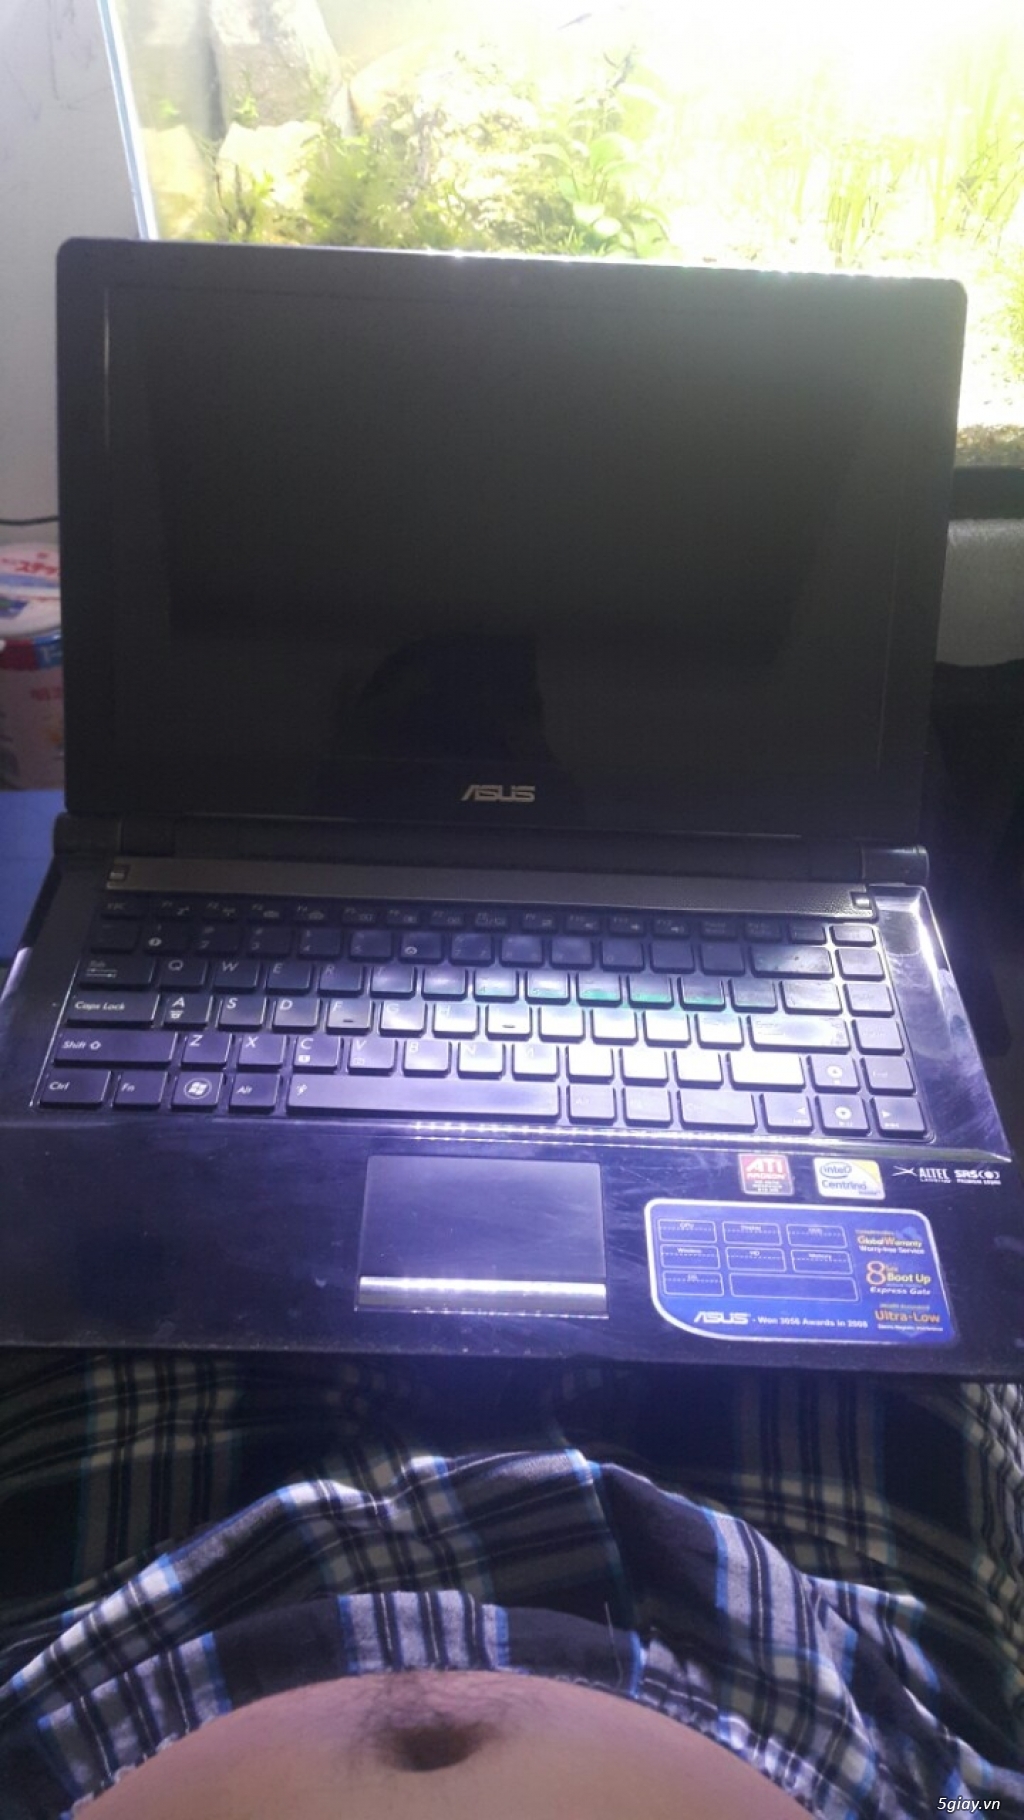 Cần bán: Bán xác laptop Asus U80V T9100 hư VGA - 2